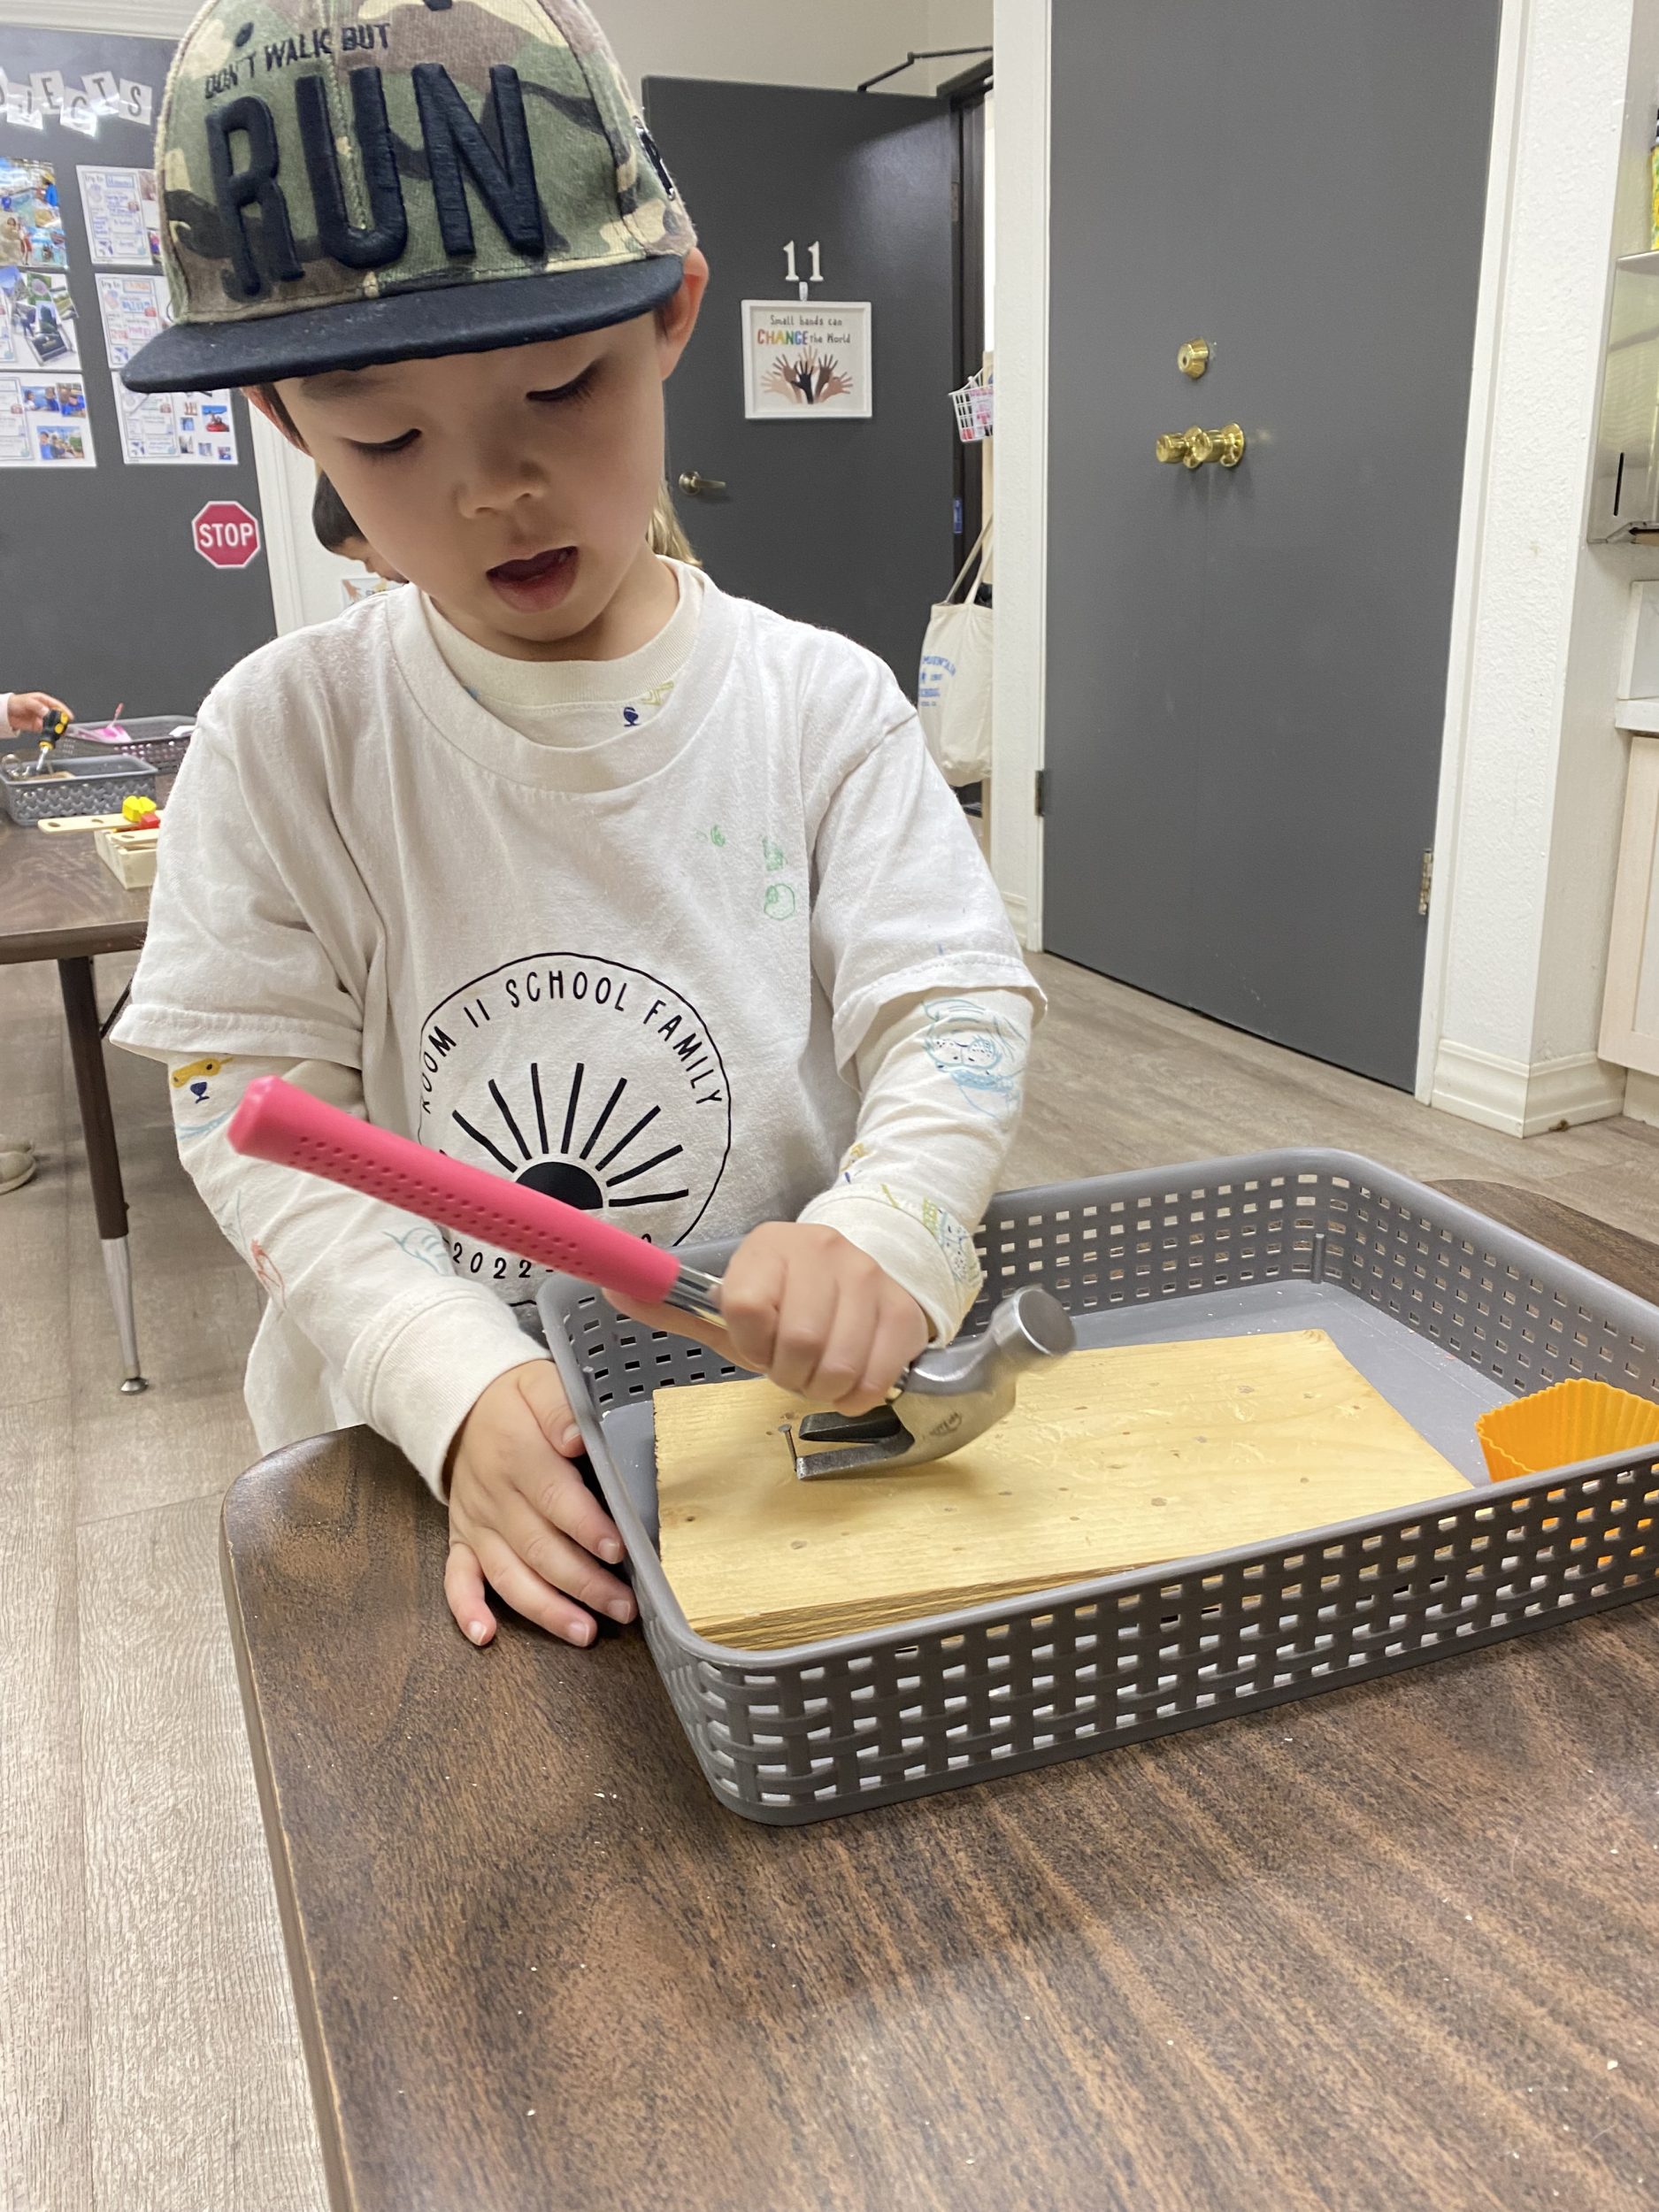 young boy using tools at preschool